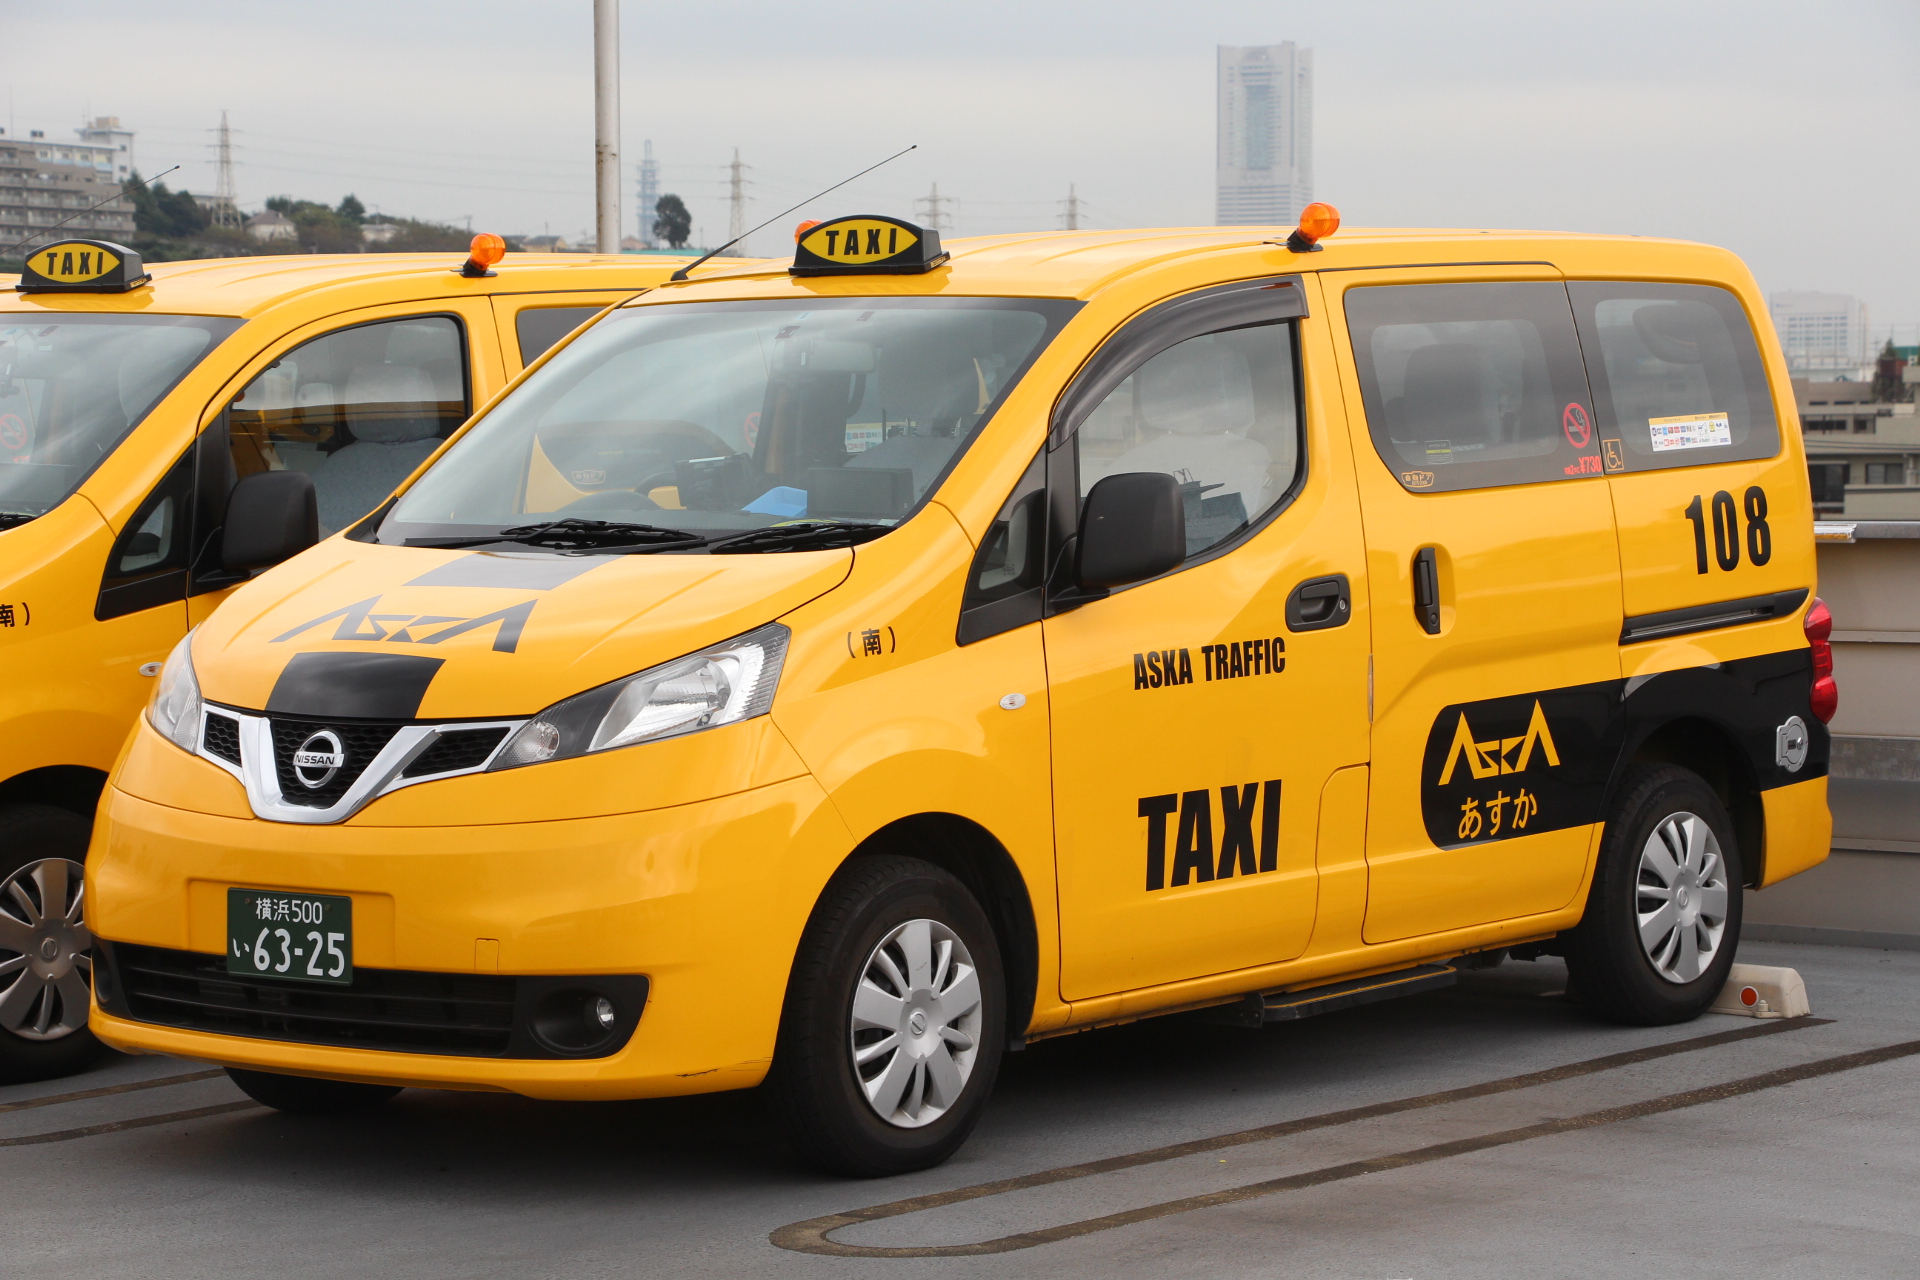 横浜市と飛鳥交通株式会社が 訪日外国人旅行者受入環境整備 タクシー に関する連携協定 を締結 横浜市のプレスリリース